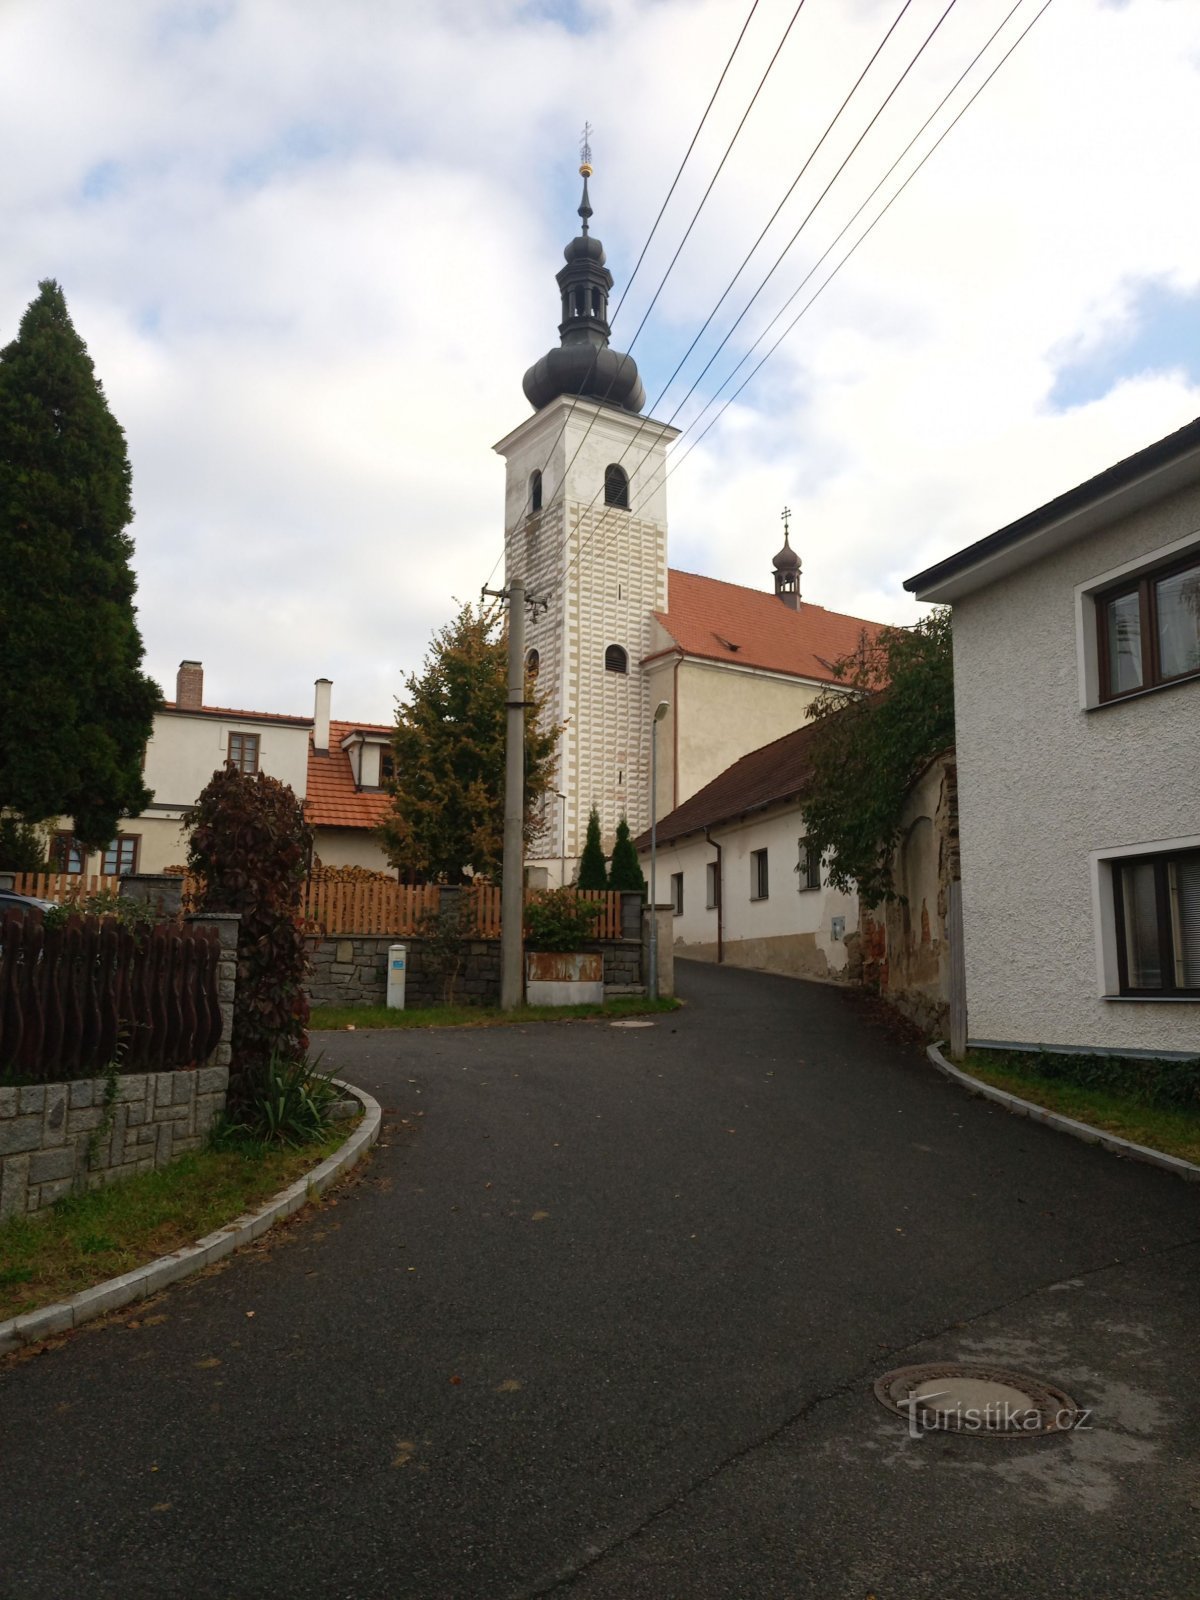 2. Iglesia de San Prčice Lawrence de alrededor del siglo XII